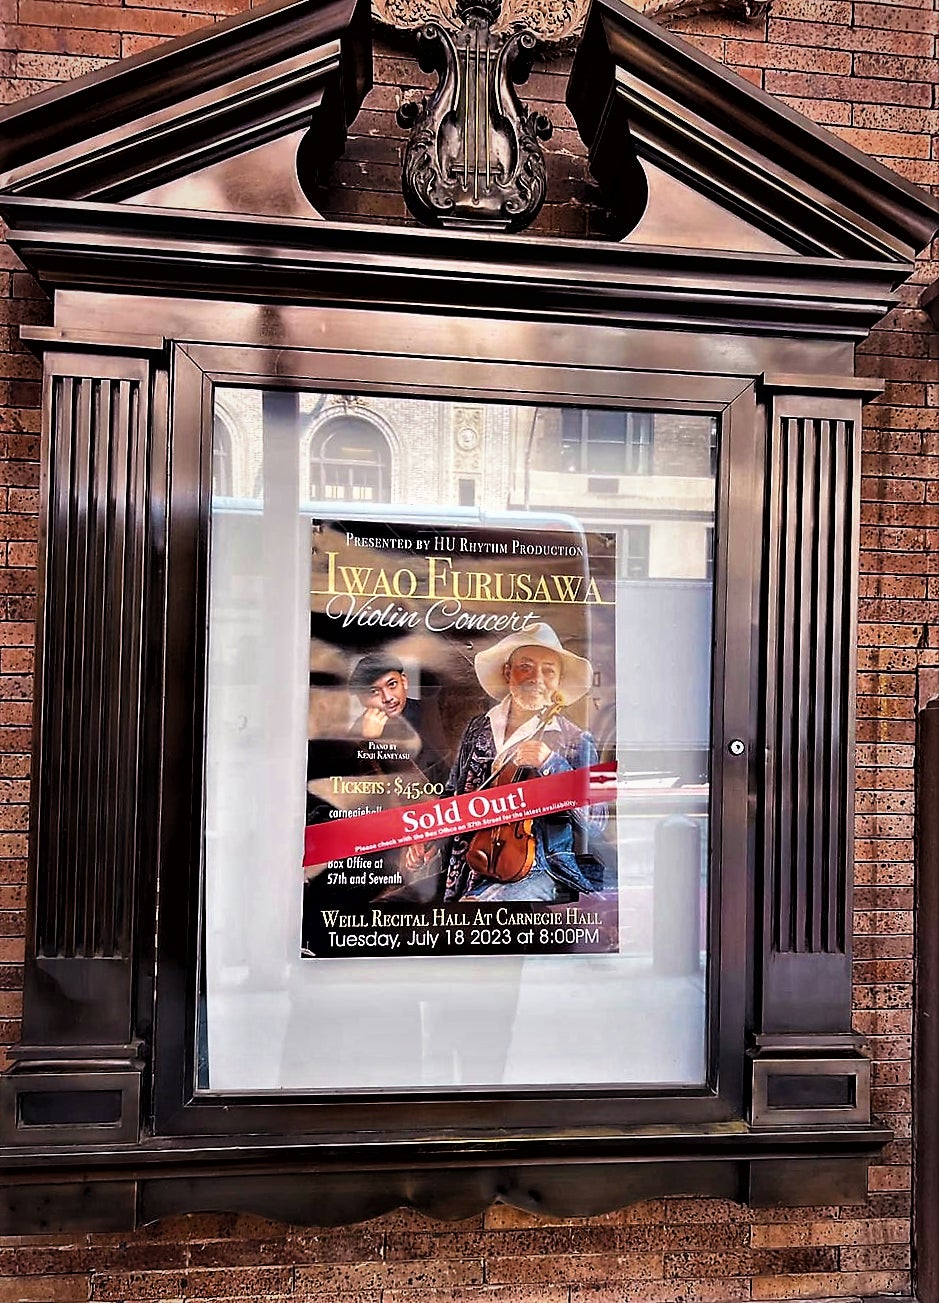 世界的なヴァイオリン奏者である古澤巖 の7月18日「カーネギーホール・ウェイルリサイタルホール」公演がソールドアウト！満員のニューヨークの聴衆を魅了しました。